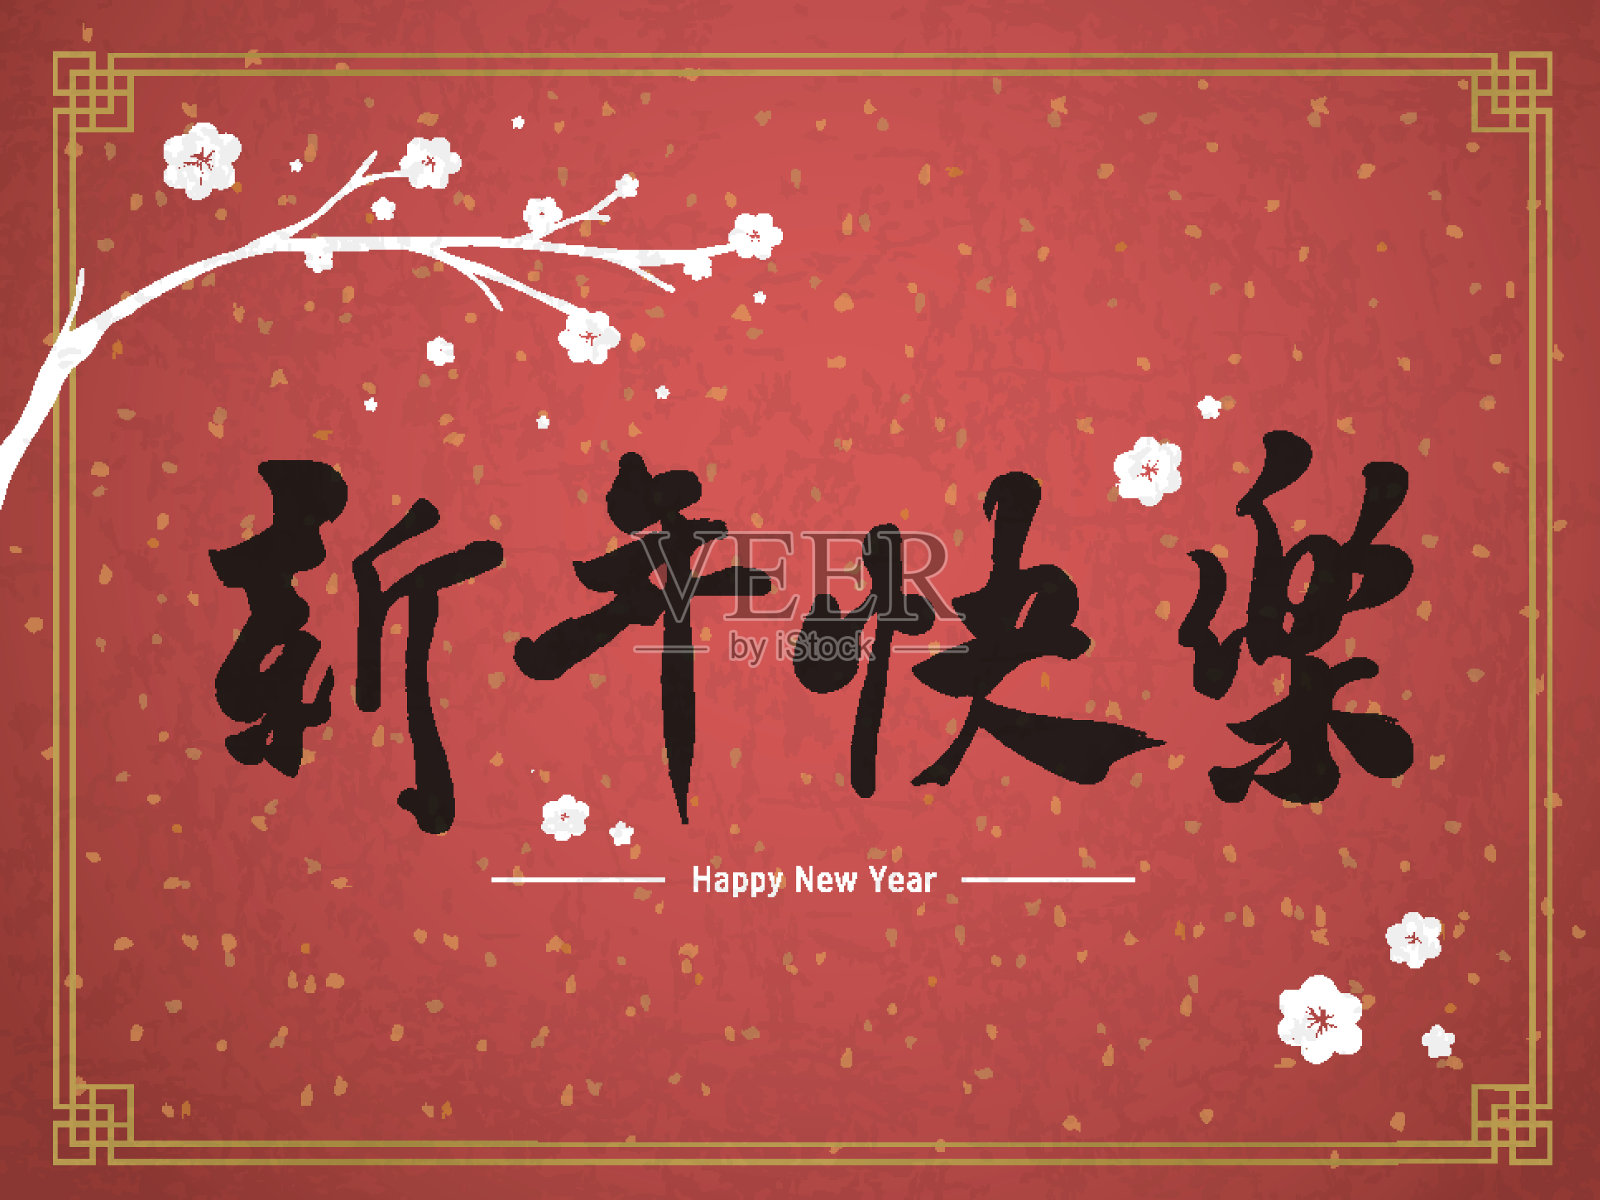 用传统中文祝你新年快乐设计模板素材